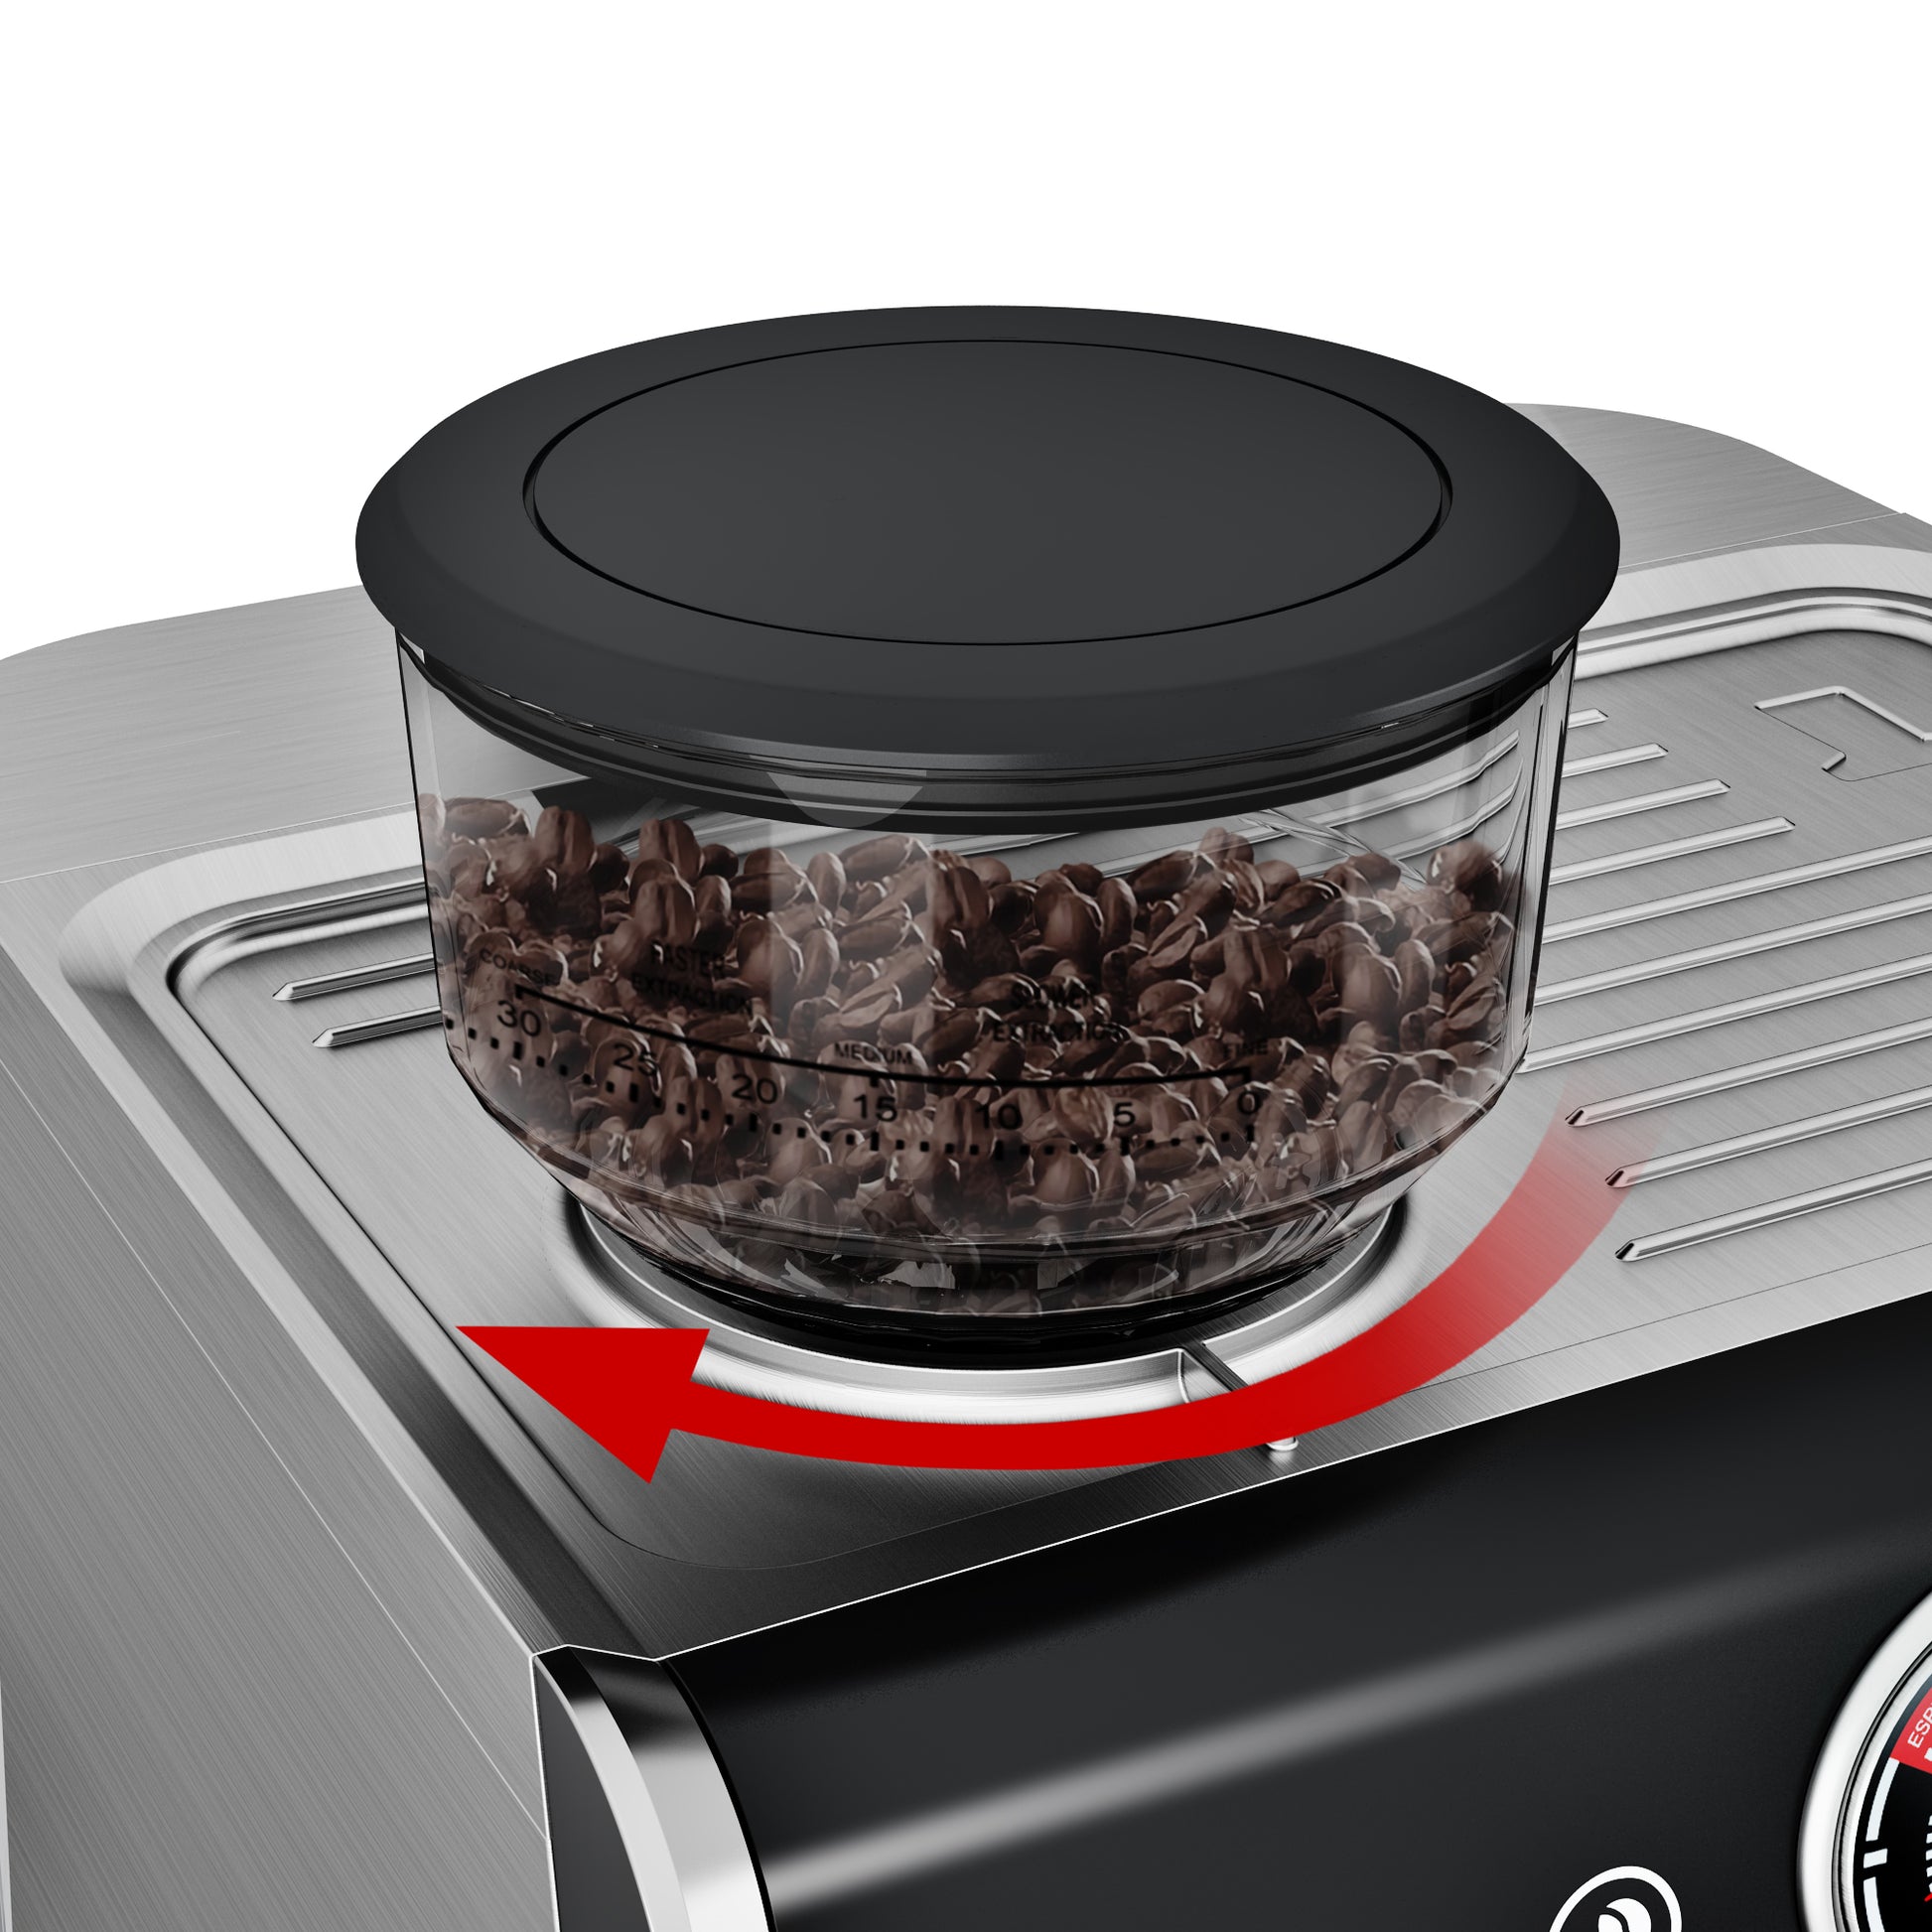 <img src="espresso machine.jpg" alt="wirsh espresso machine coffee grinder"/>